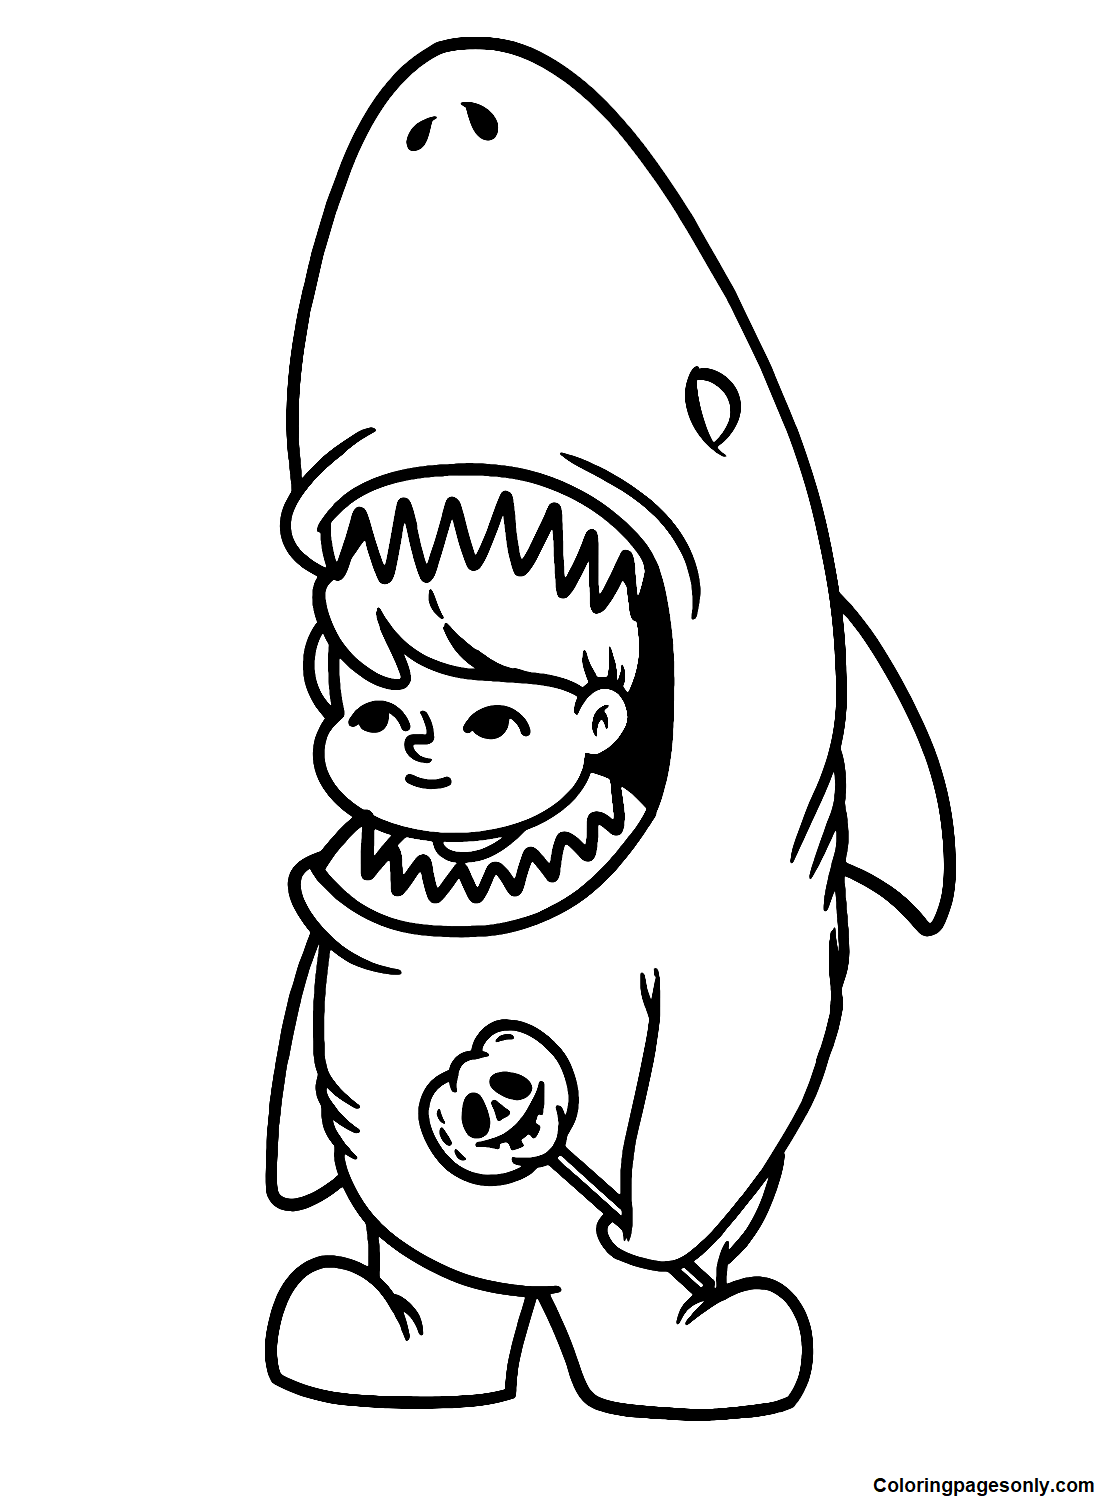 Garoto fofo fantasiado de tubarão de Boyish